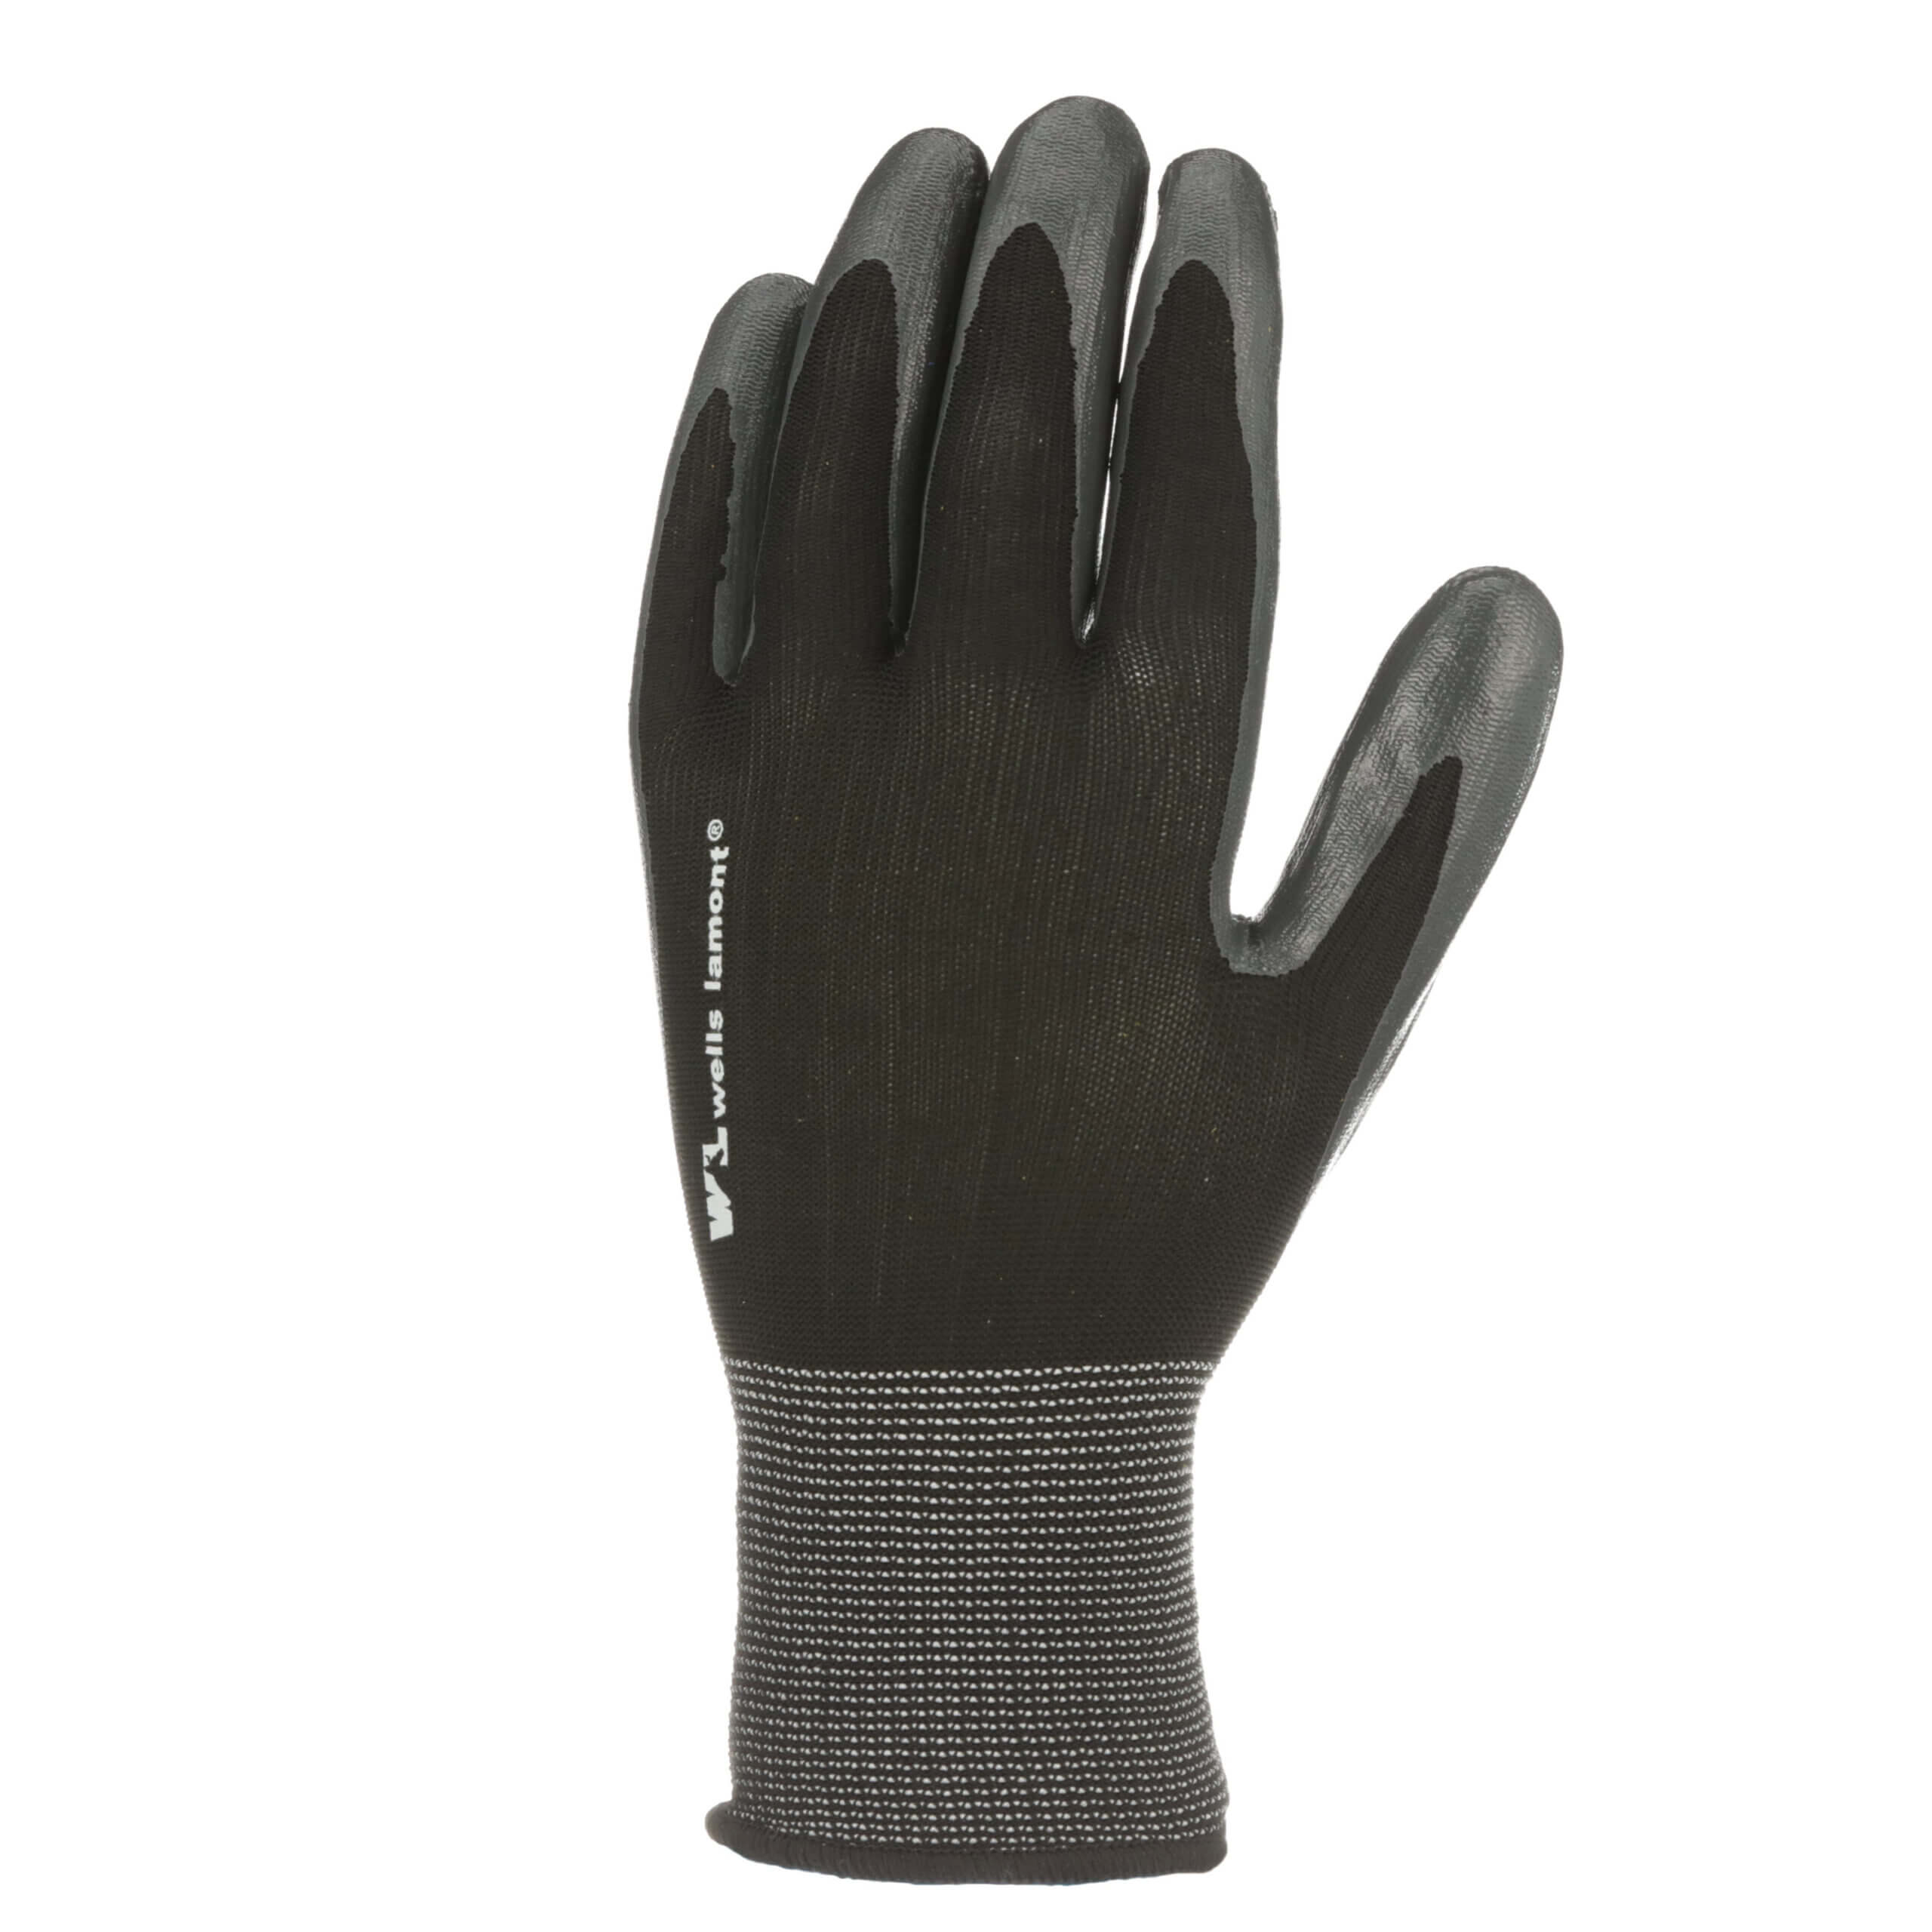 Improved Grip Black 10.5" Nitrile Coated Work Gloves Breathable